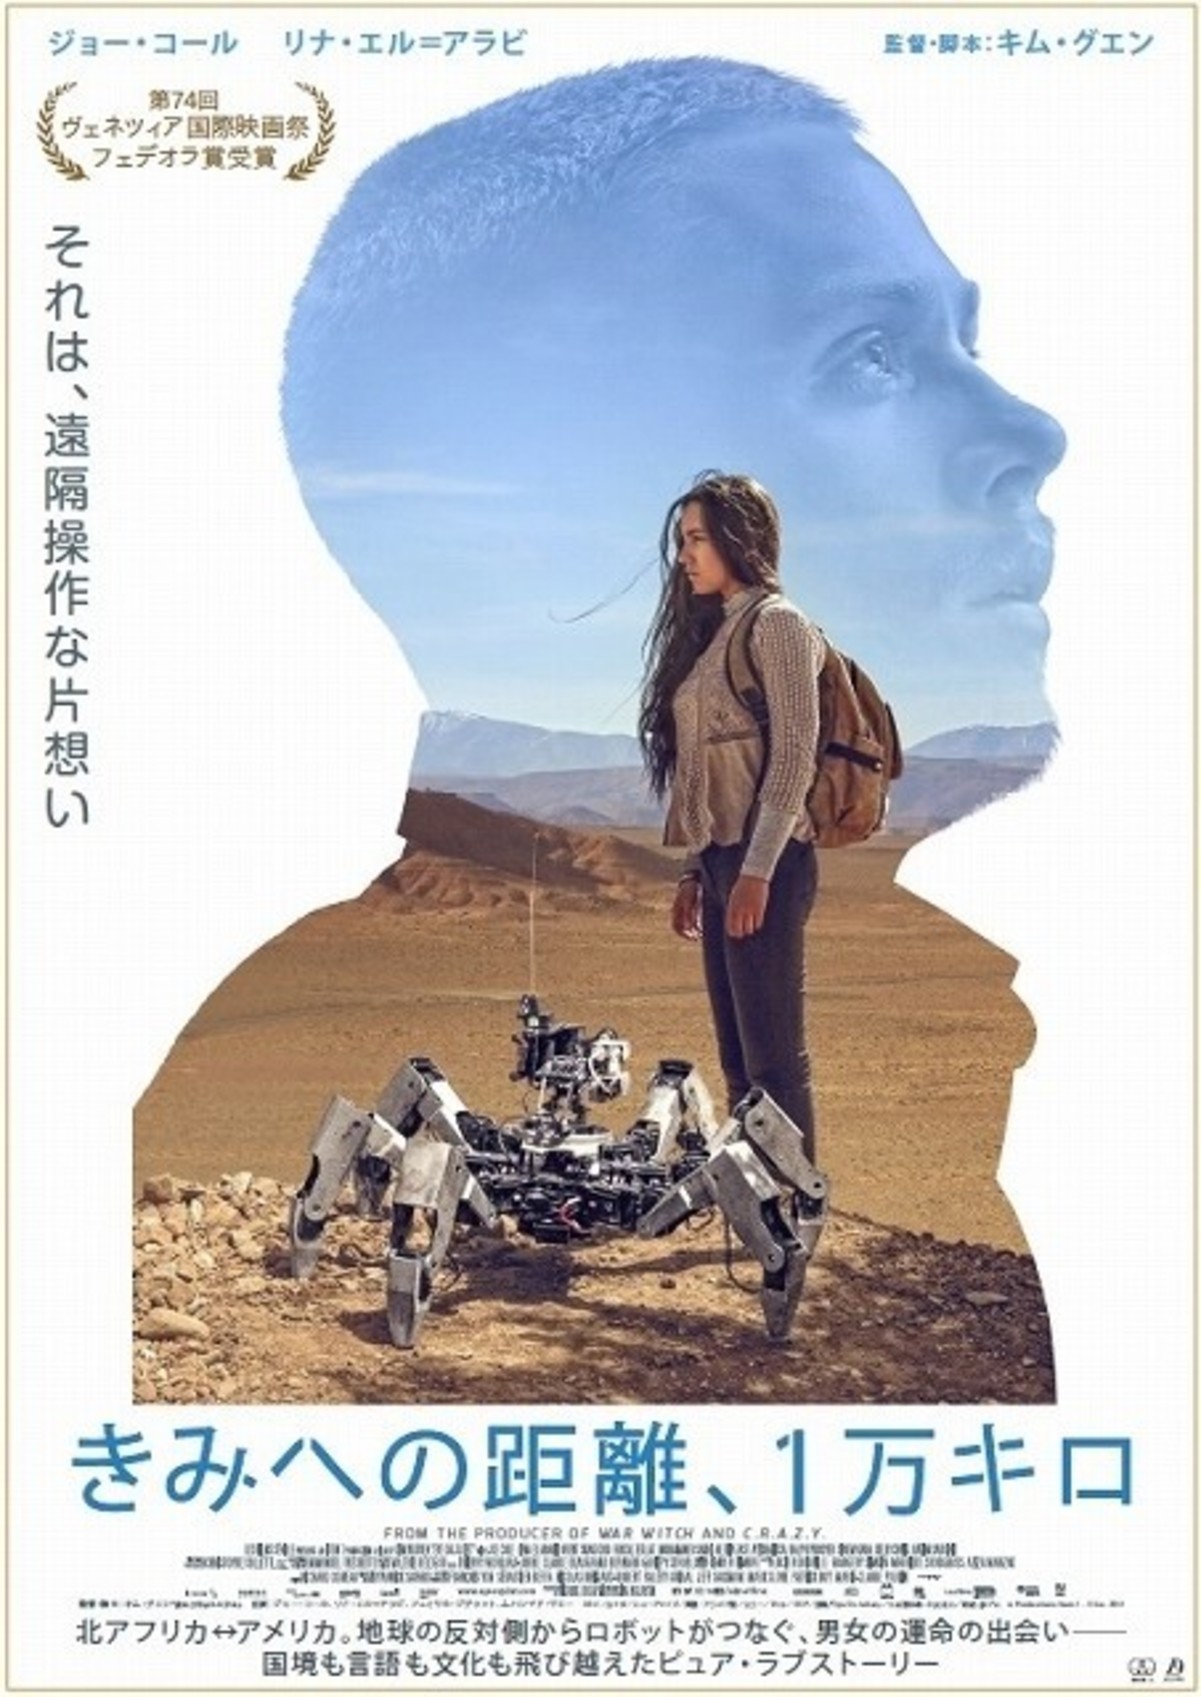 ロボットを通じた片思い 新時代のラブストーリー きみへの距離 1万キロ 予告披露 映画ニュース 映画 Com